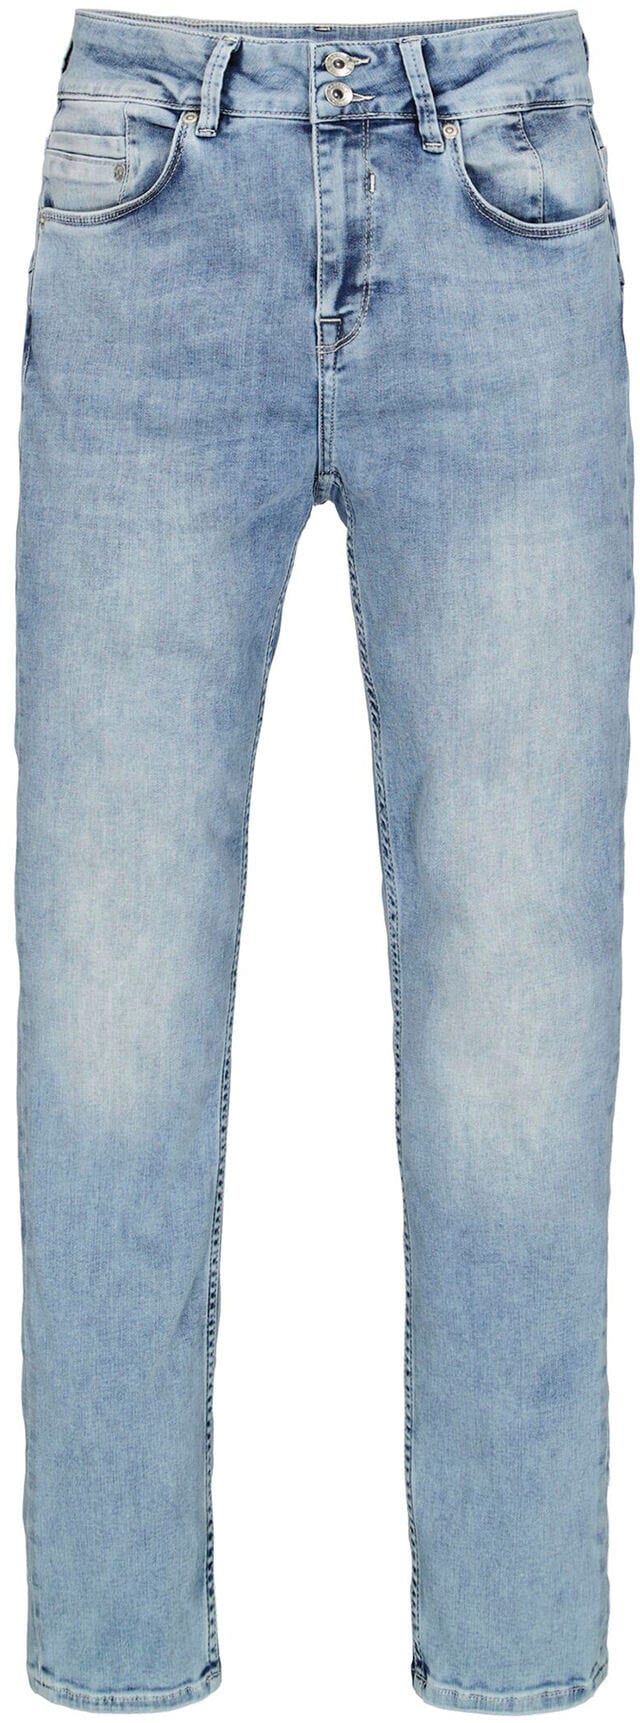 Garcia Slim-fit-Jeans »Caro slim curved« bestellen bei OTTO